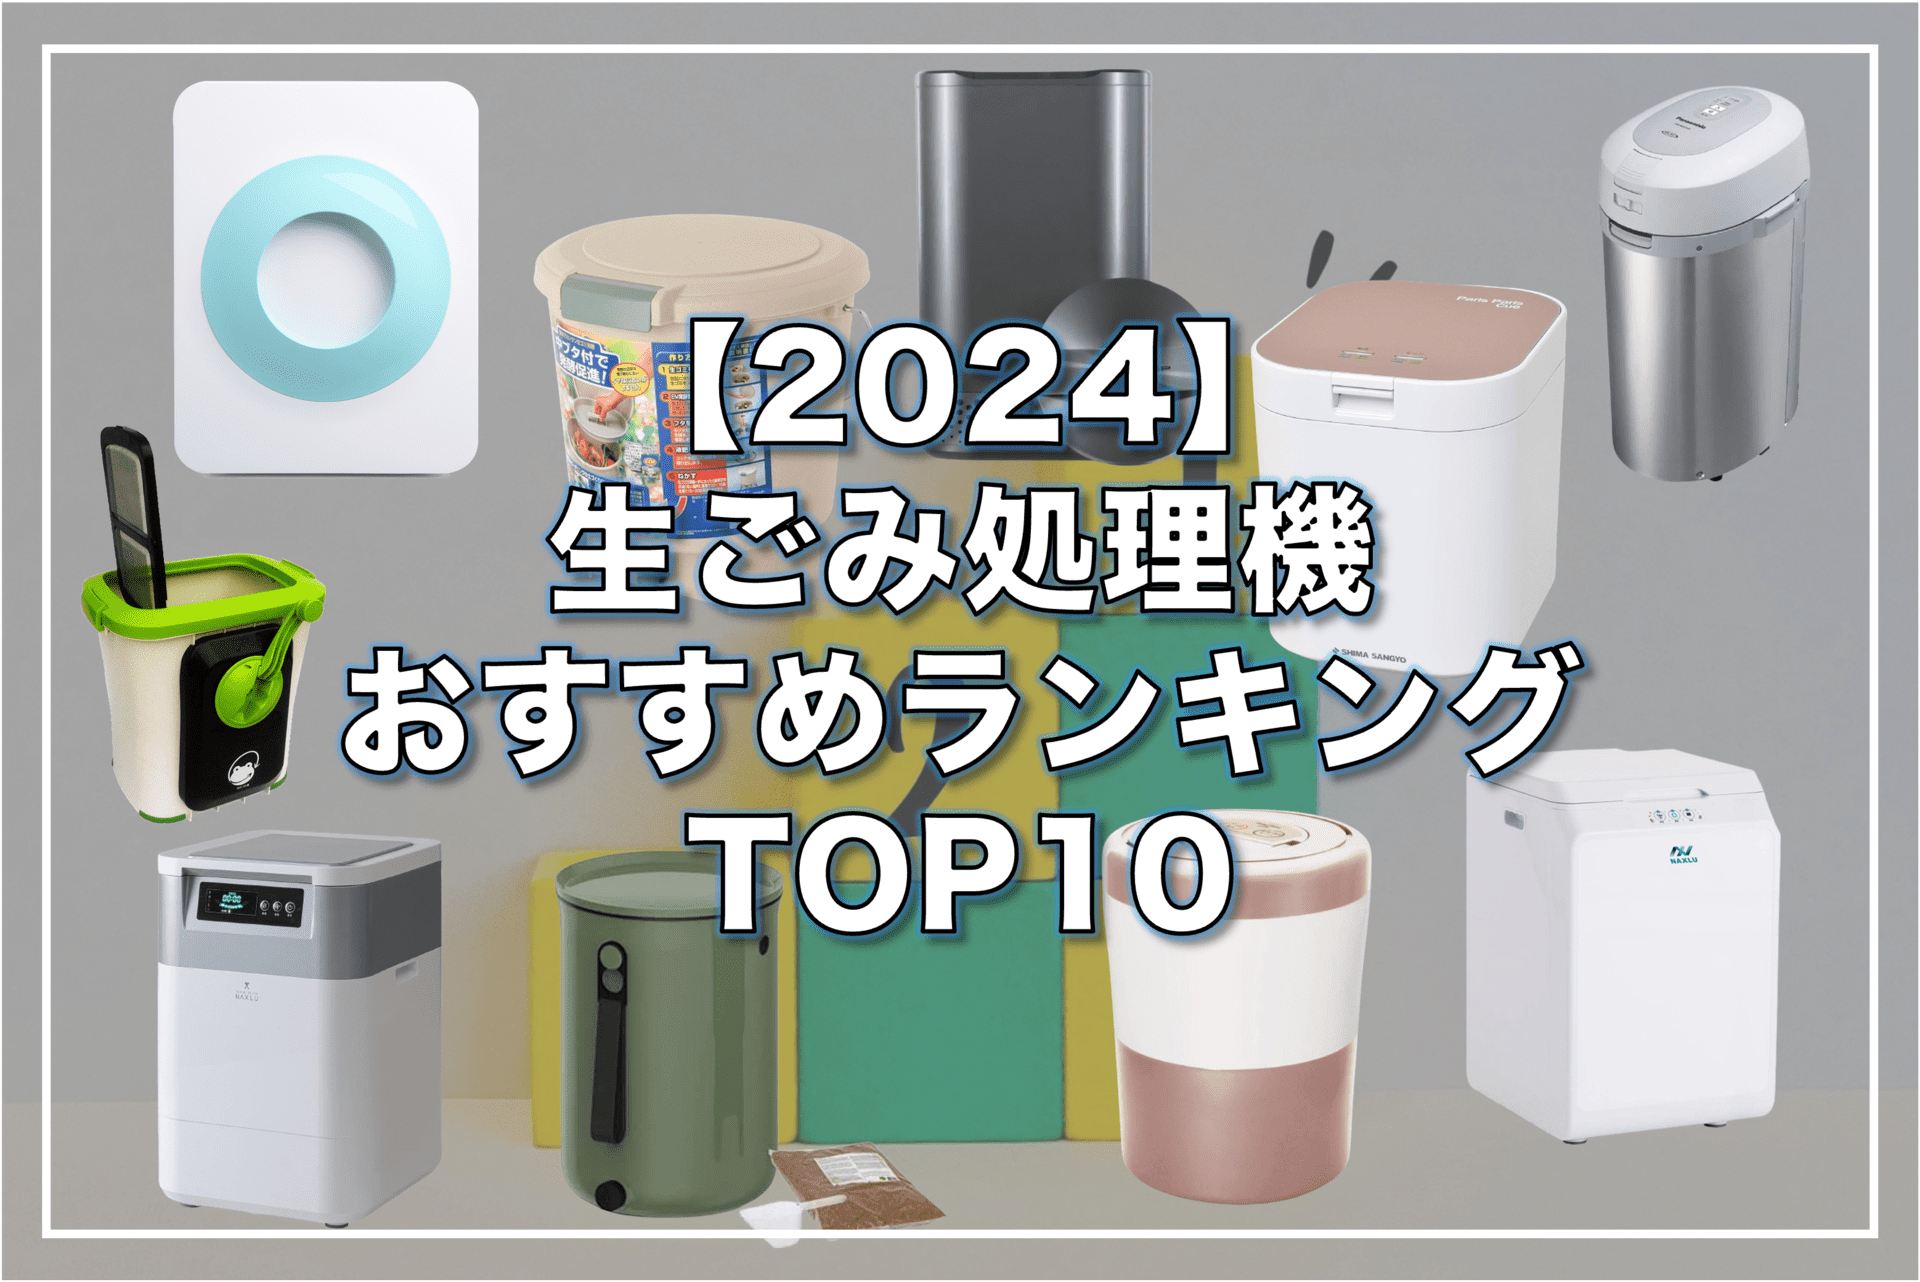 garbage-disposal-machine-top10